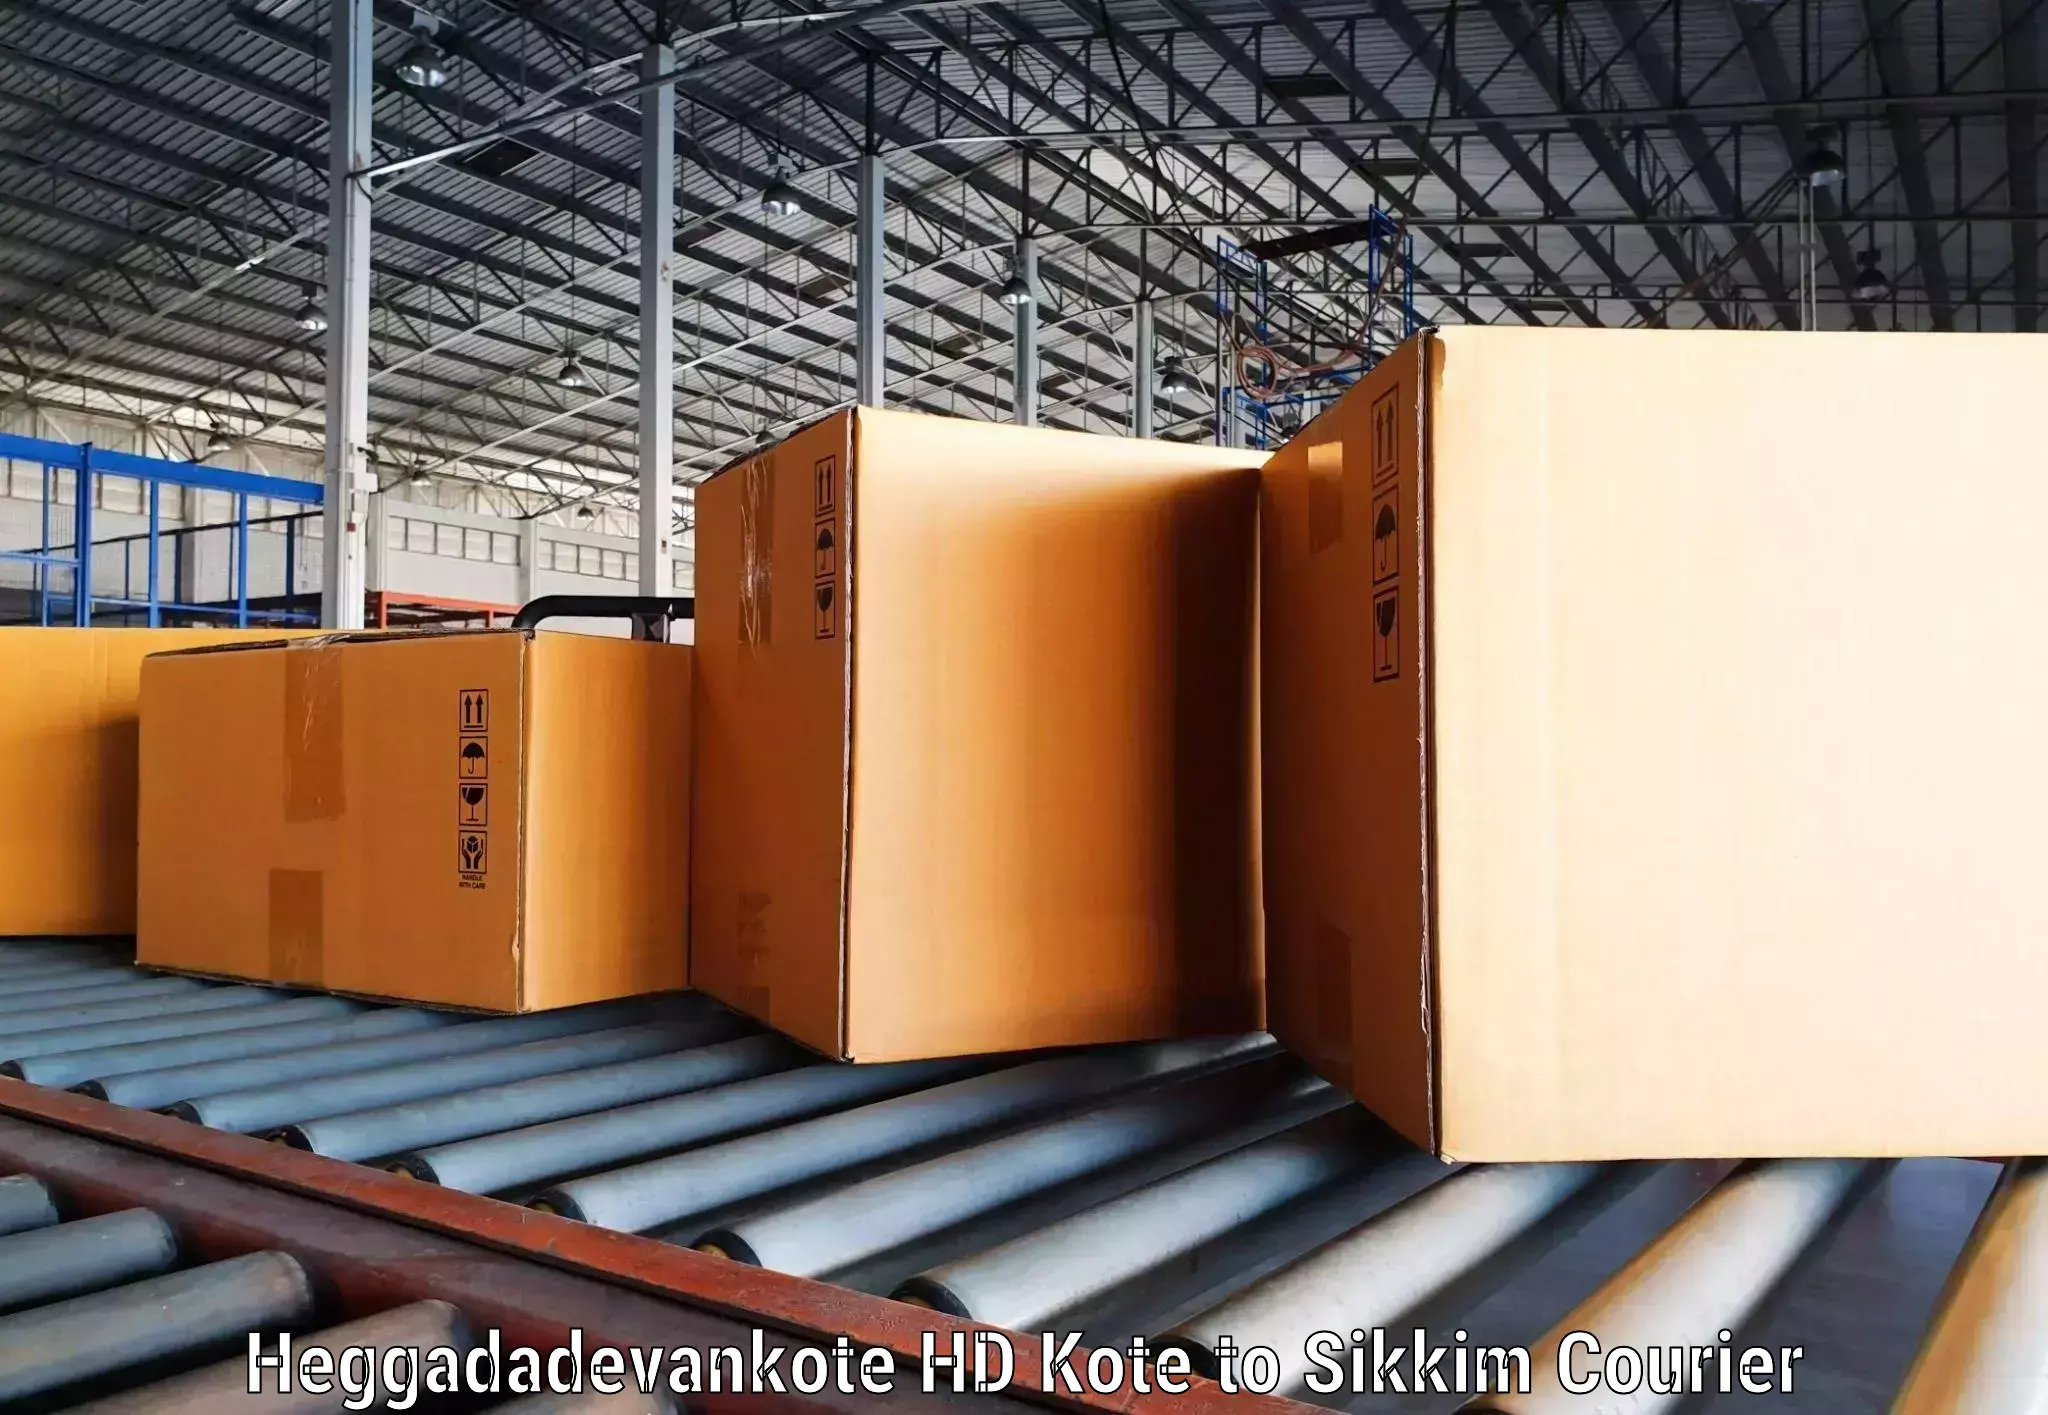 High-efficiency logistics in Heggadadevankote HD Kote to Pelling